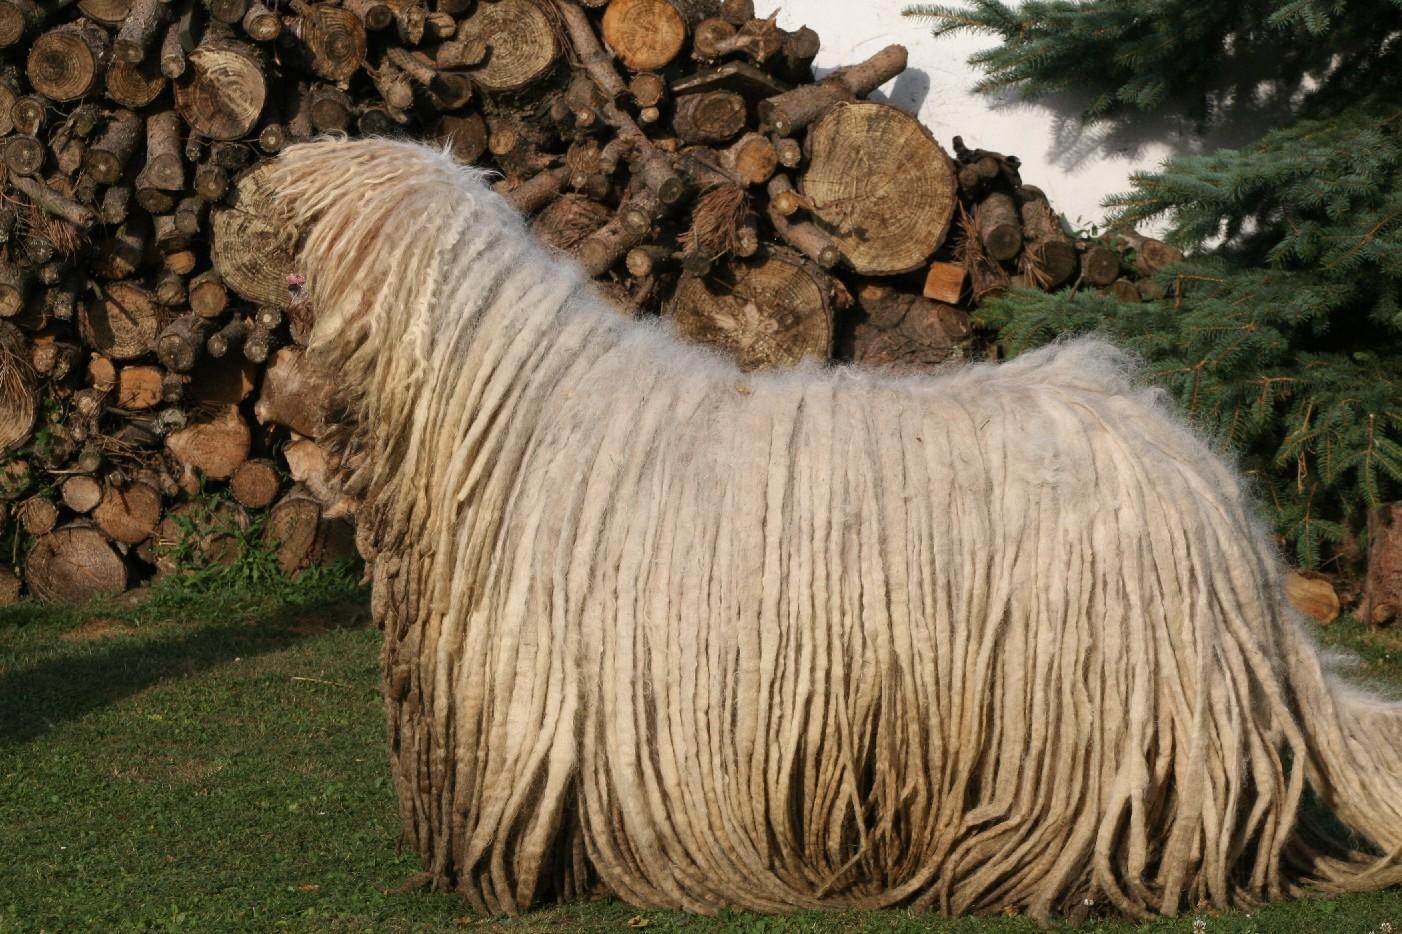 Венгерская овчарка командор — собака с дредами
венгерская овчарка командор — собака с дредами